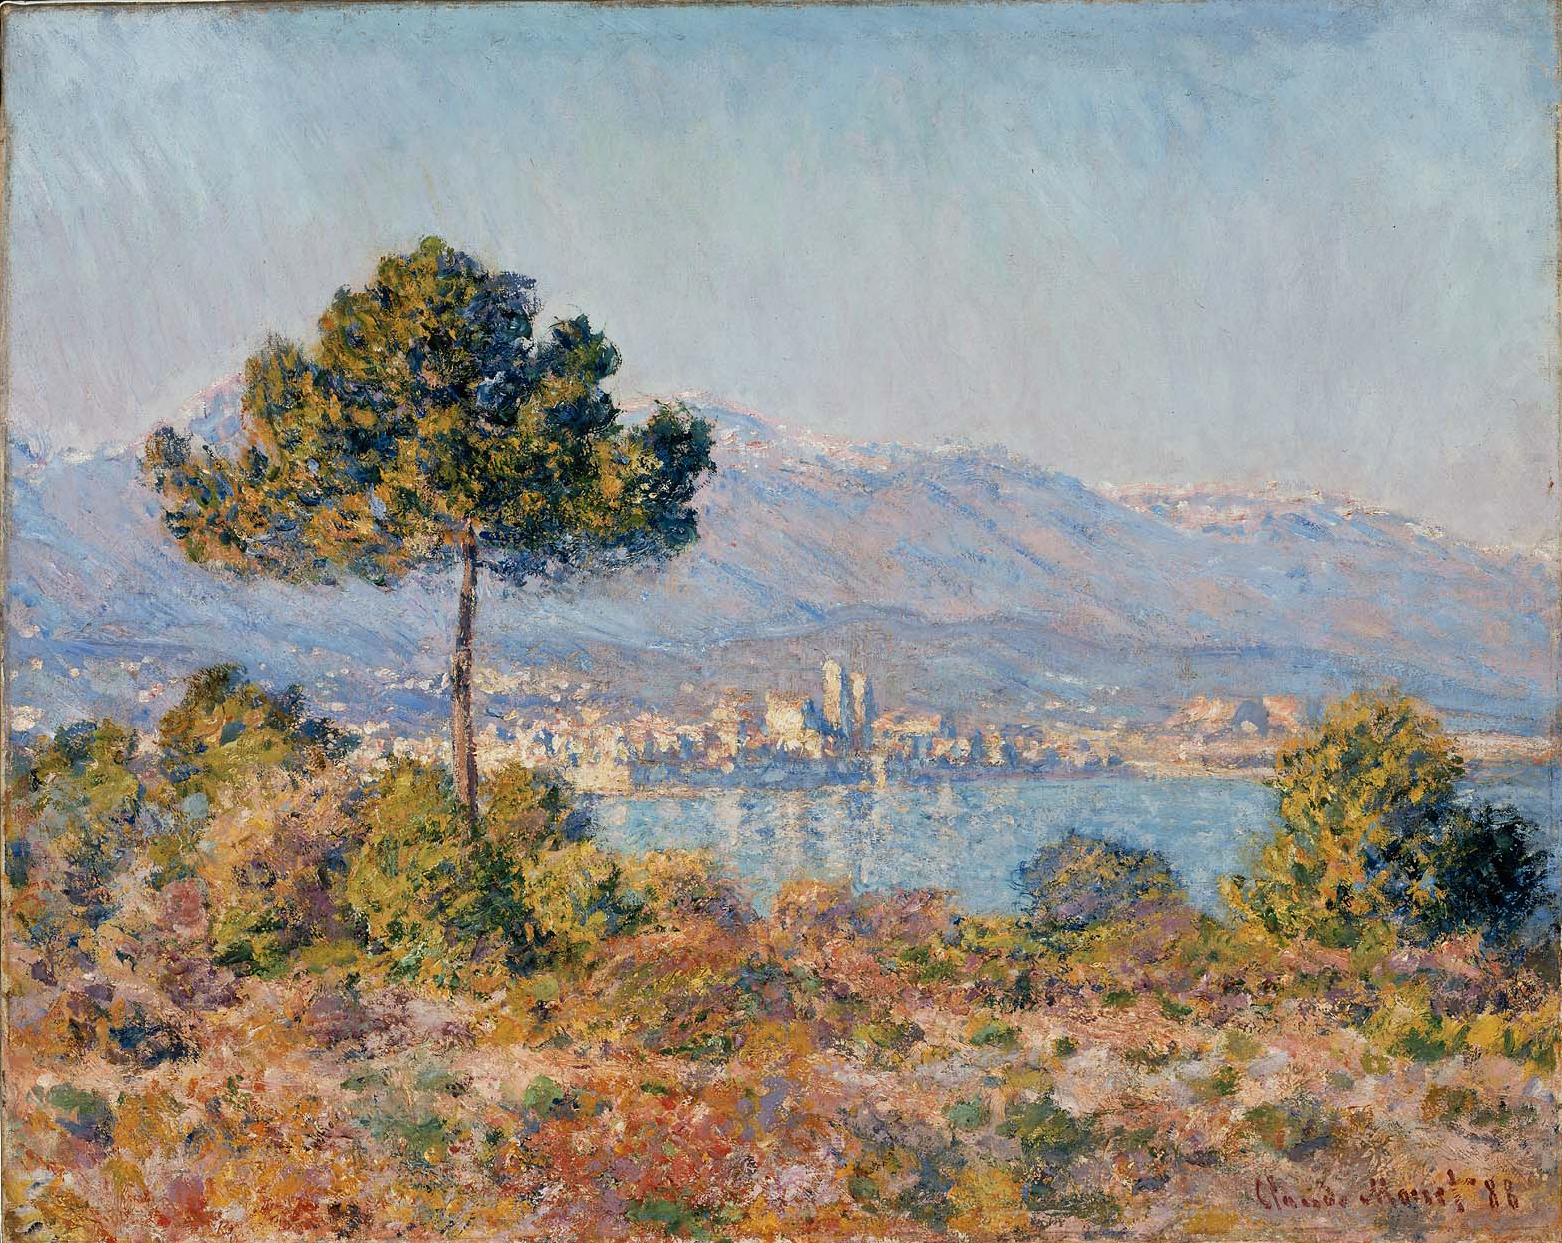 Mediterranean by Claude Monet